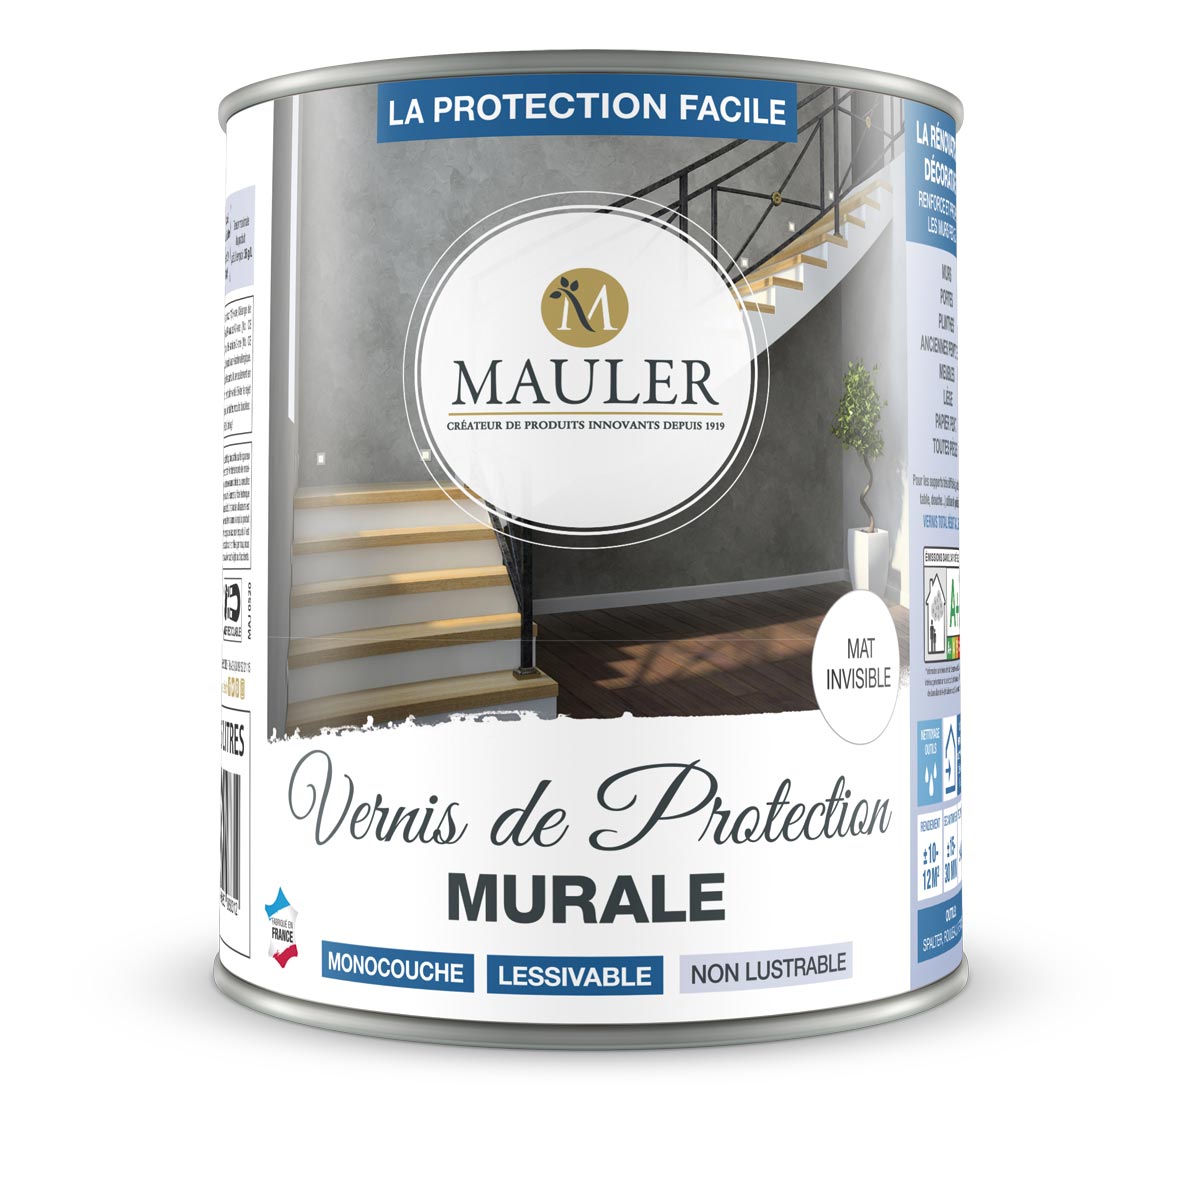 Gamme 1919 by Mauler : Vernis incolore anti uv pour tous bois extérieurs,  apporte une protection esthétique durable !